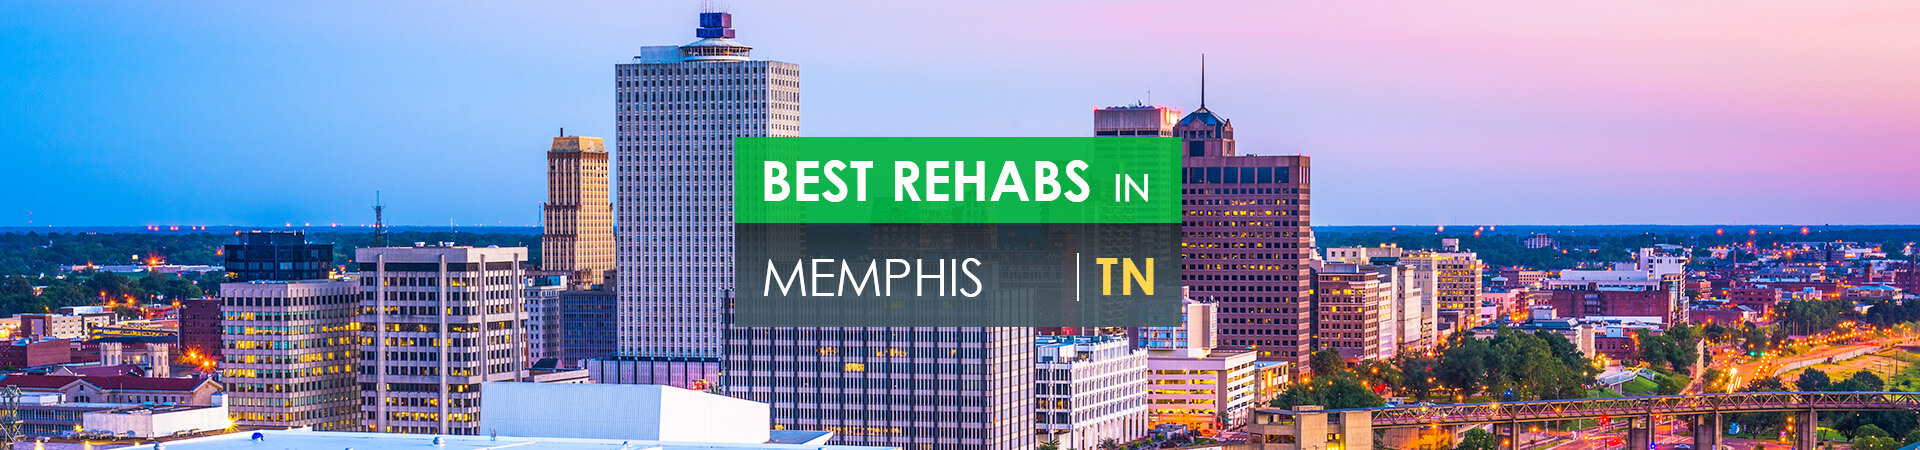 Best rehabs in Memphis, TN